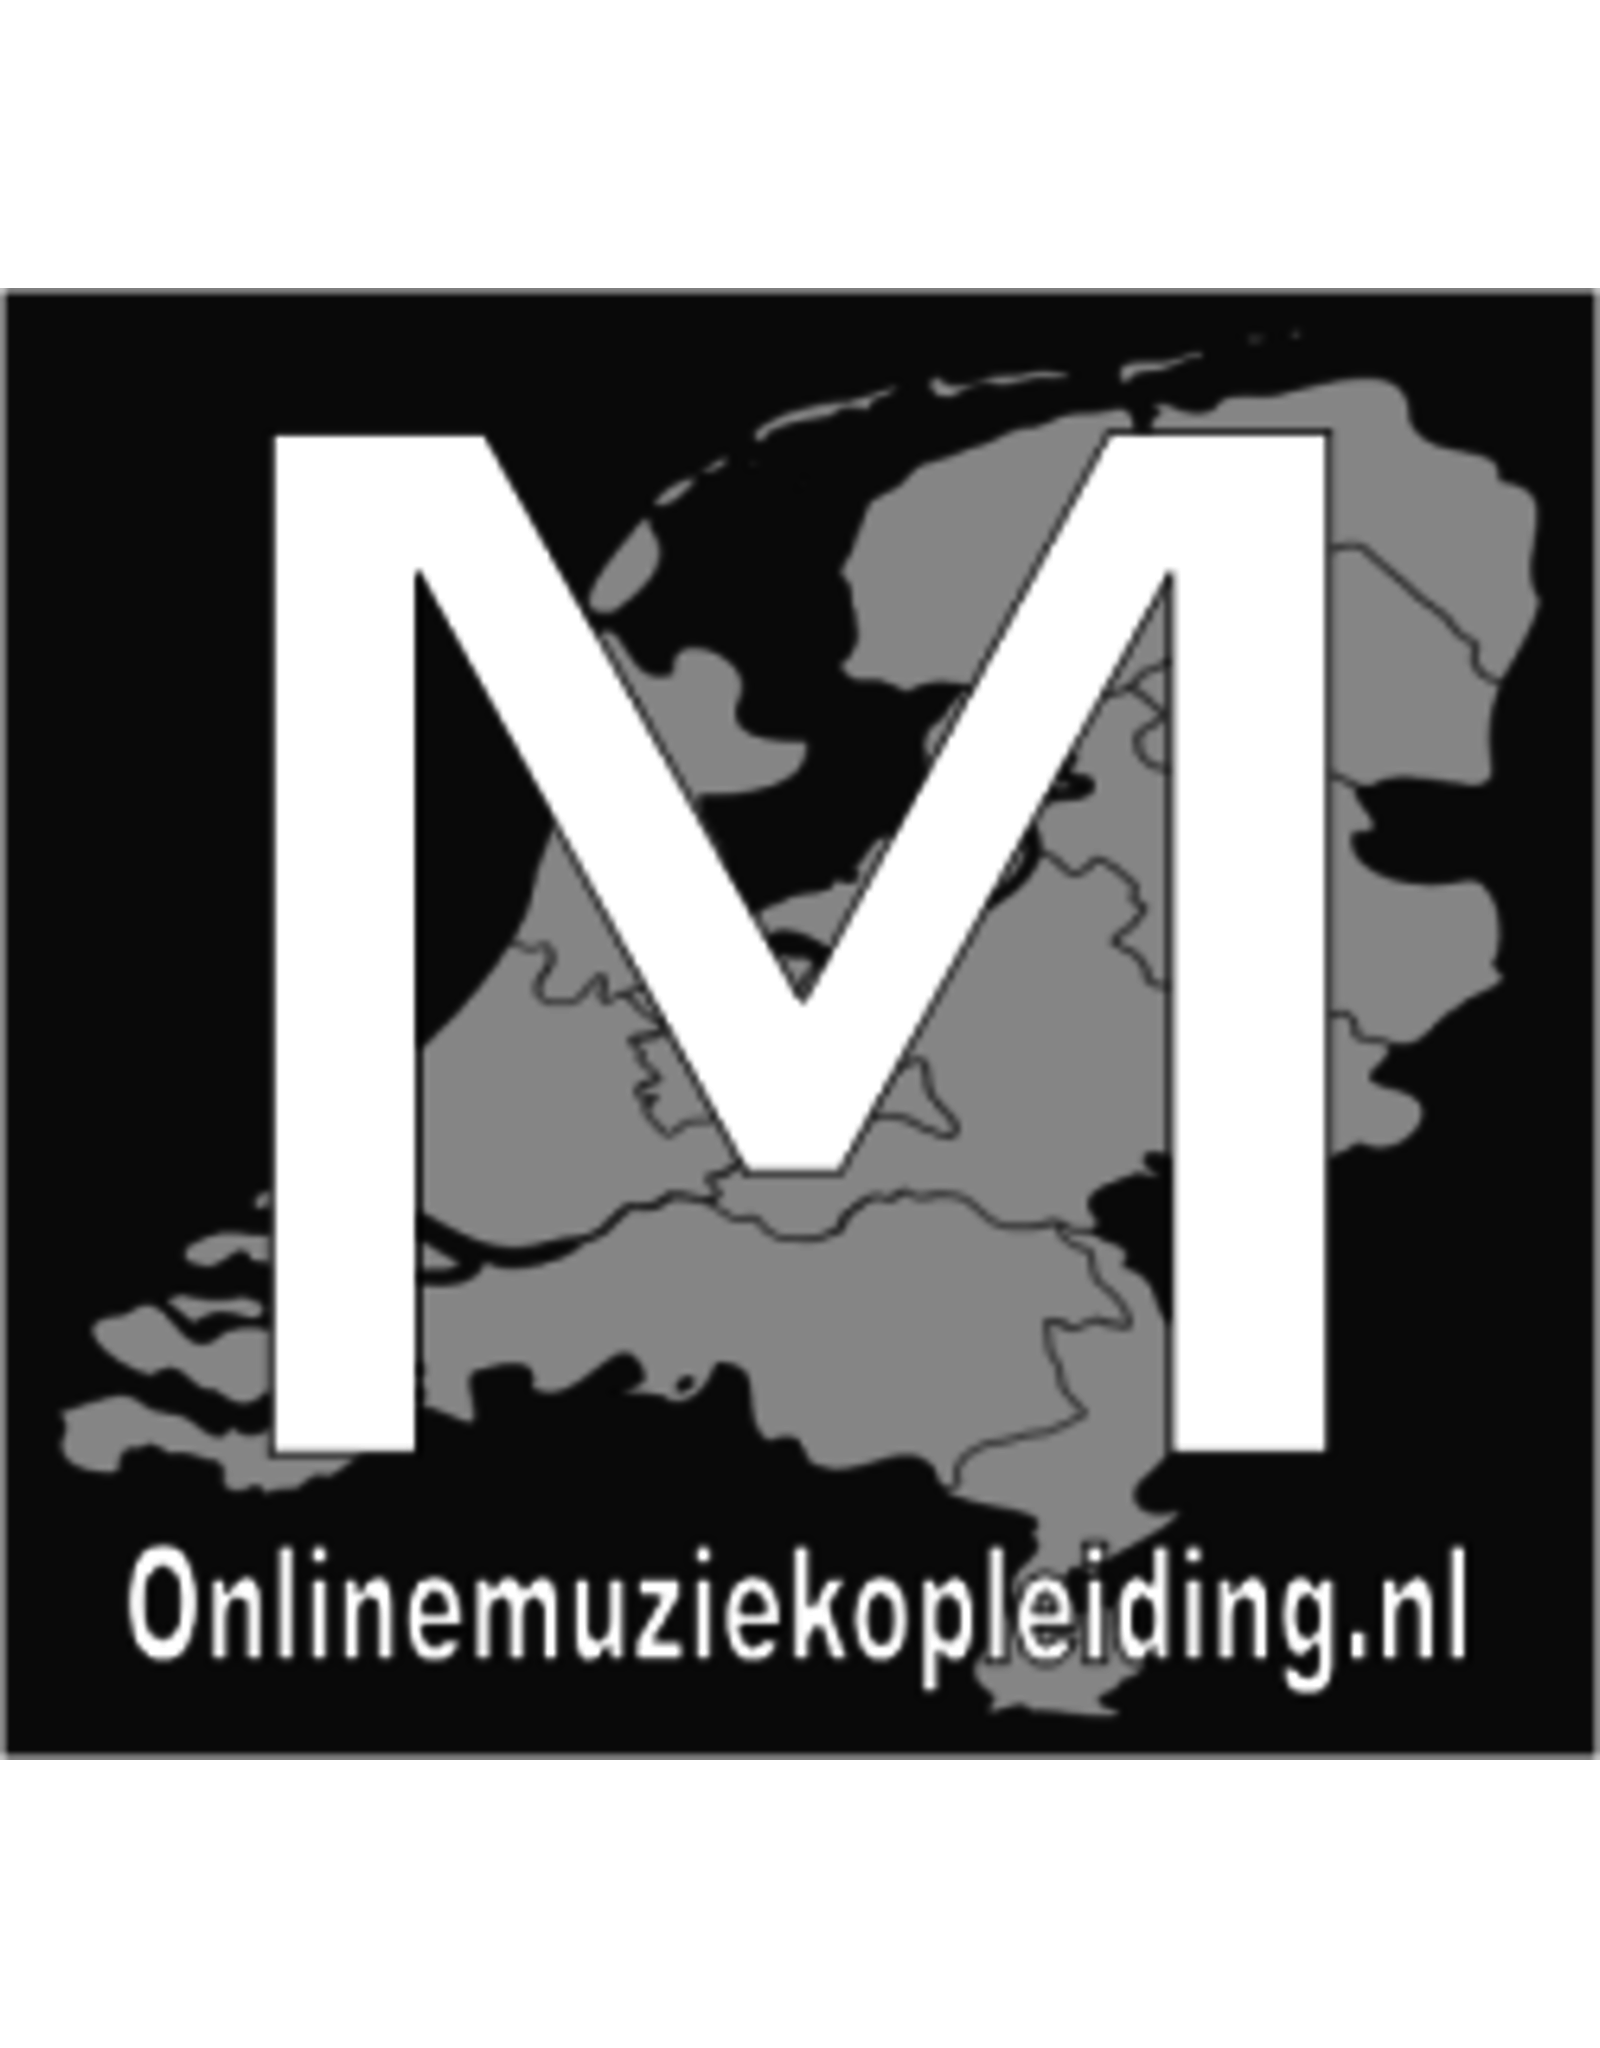 Online Muziekopleiding Dwarsfluitlessen onder de 21 jaar Online Muziekopleiding